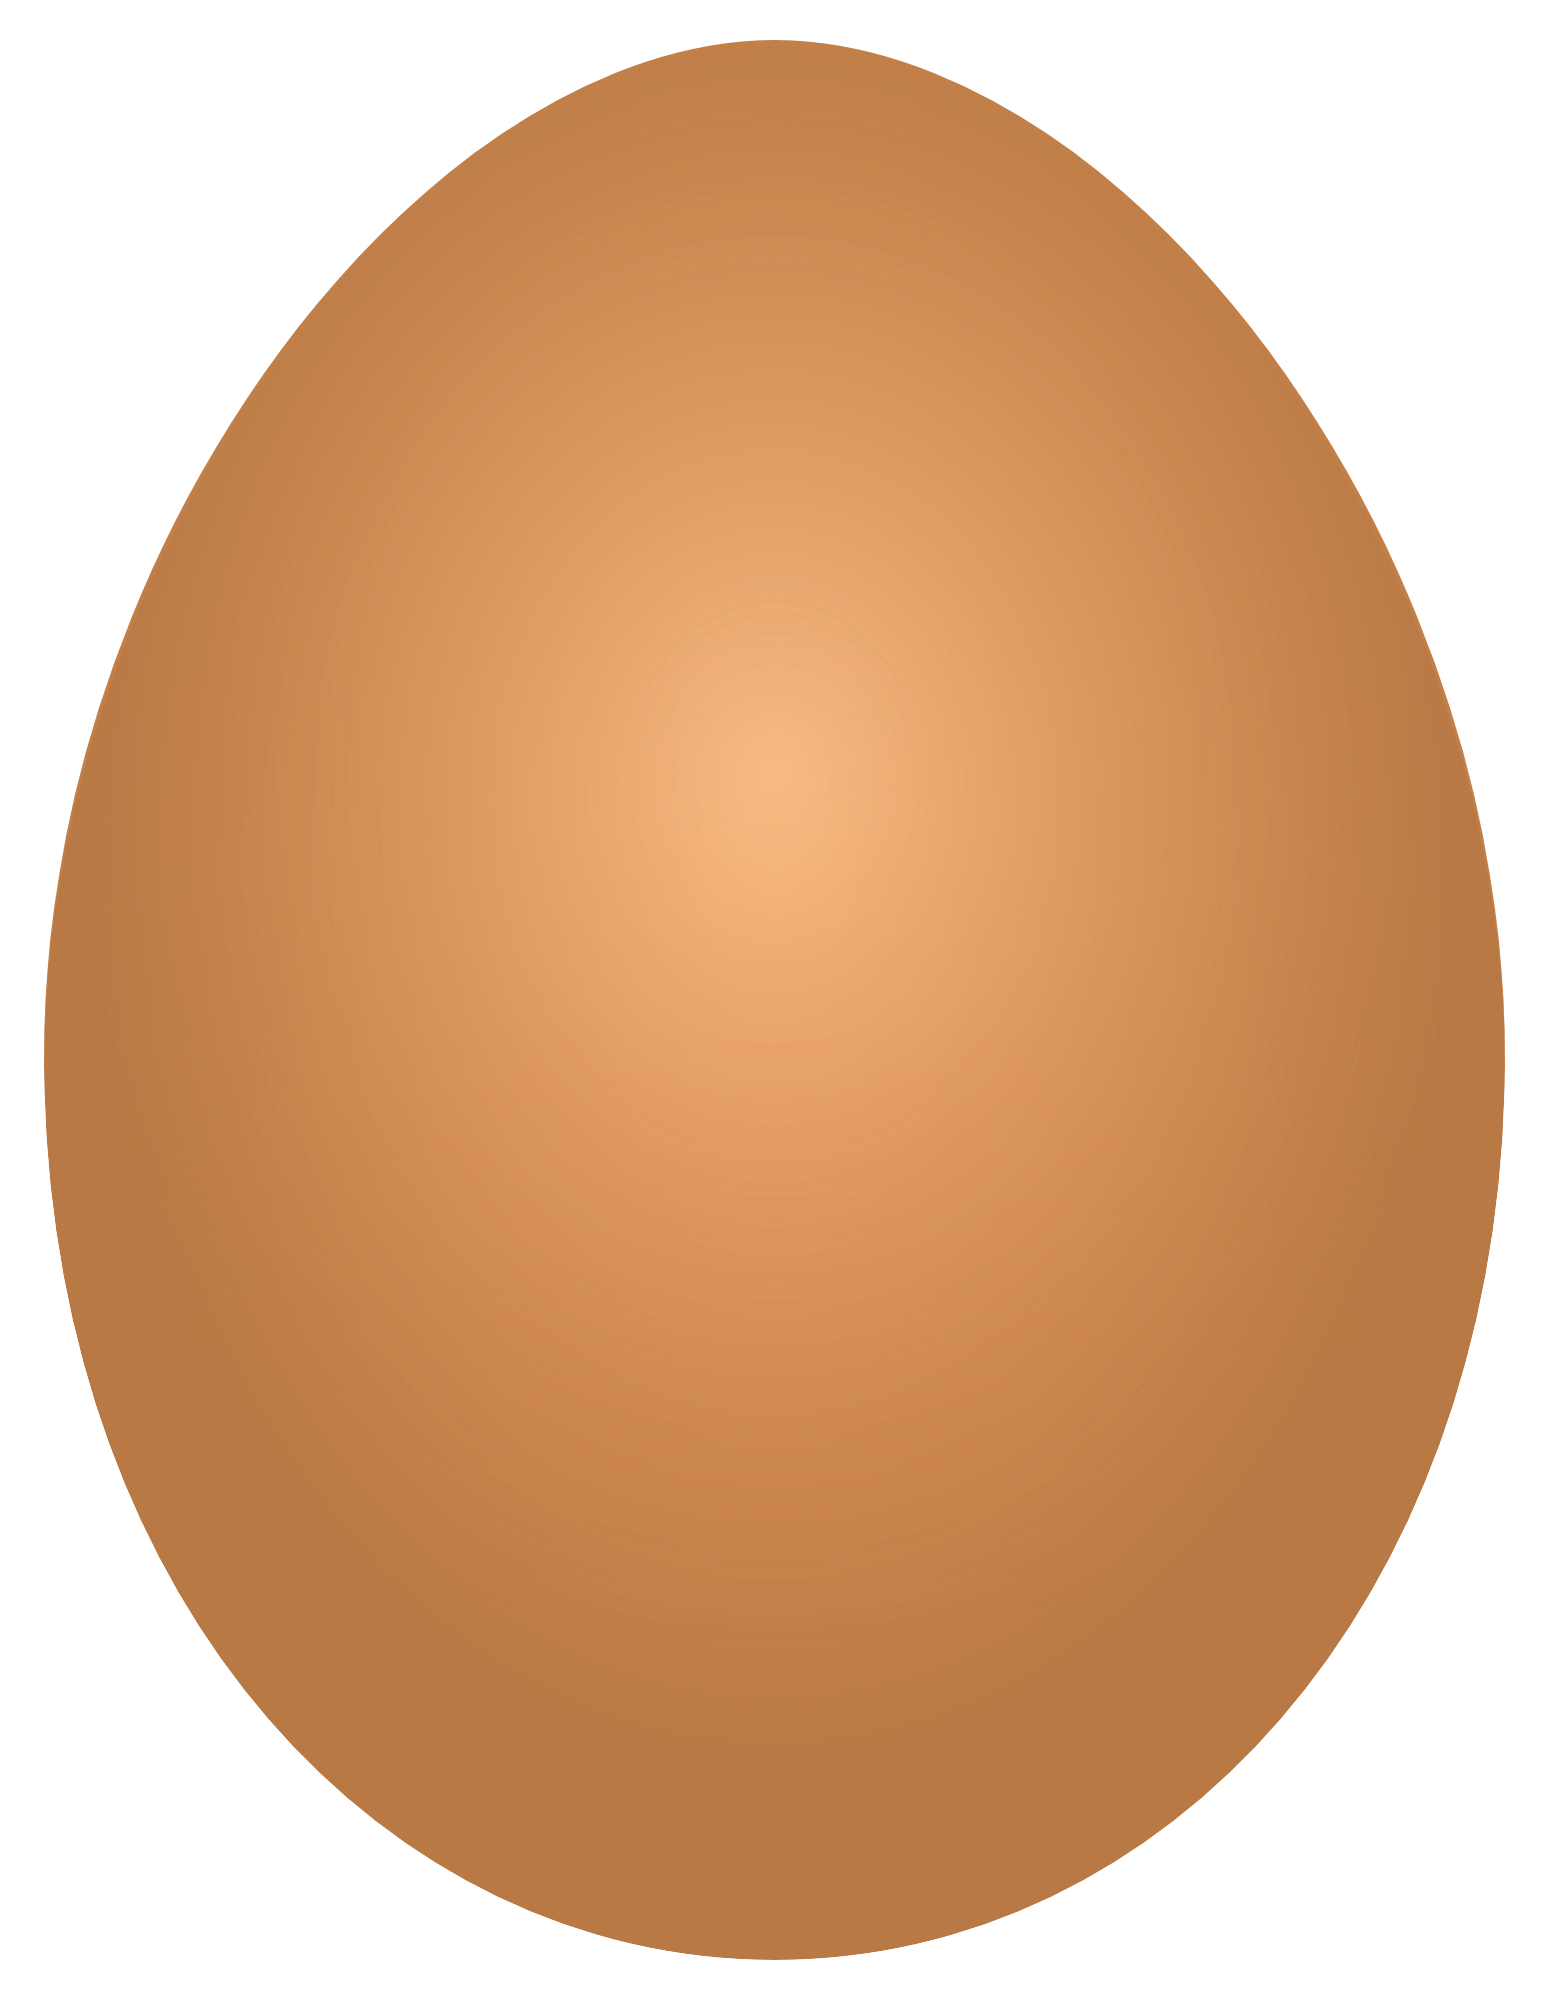 Egg Transparent Images